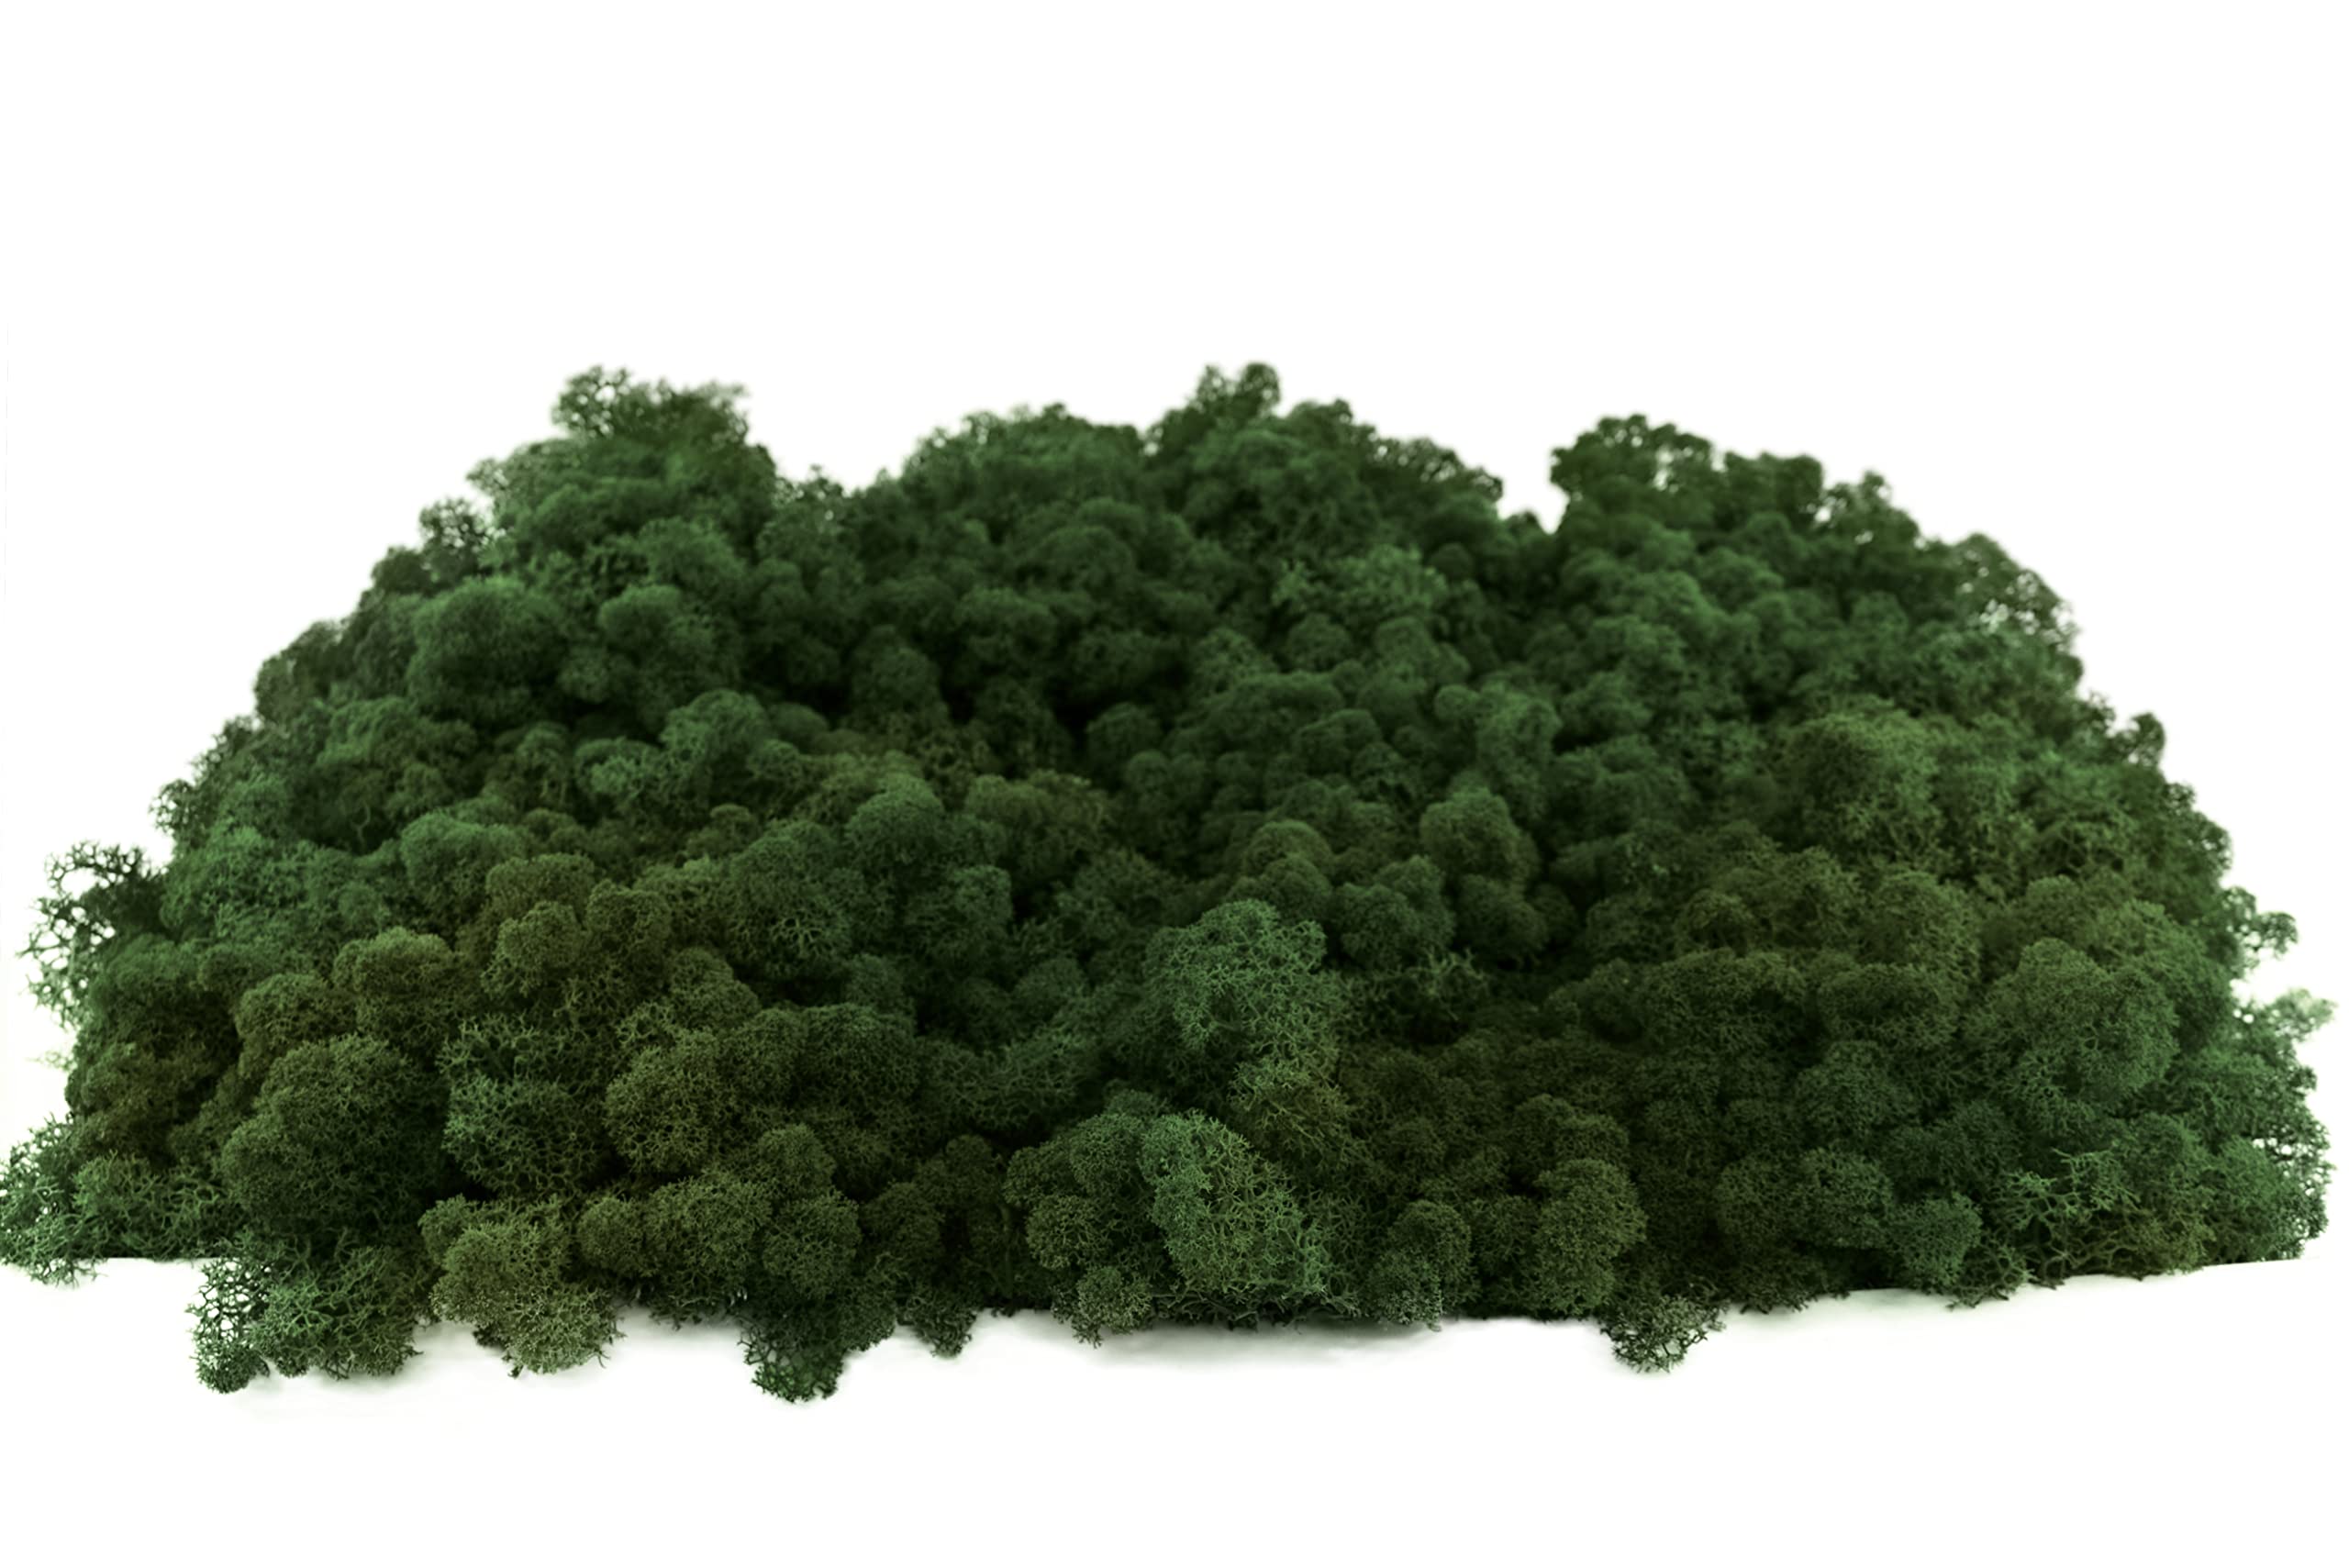 INMO Moos - Islandmoos echtes Natur Moos konserviert 500g Dunkelgrün. Dekomoos zum Basteln, Moosbild, Wand-Bilder, Wanddeko, Modellbau weitere Farben und Mengen zur Auswahl 40g - 500g 1 KG - 4 KG